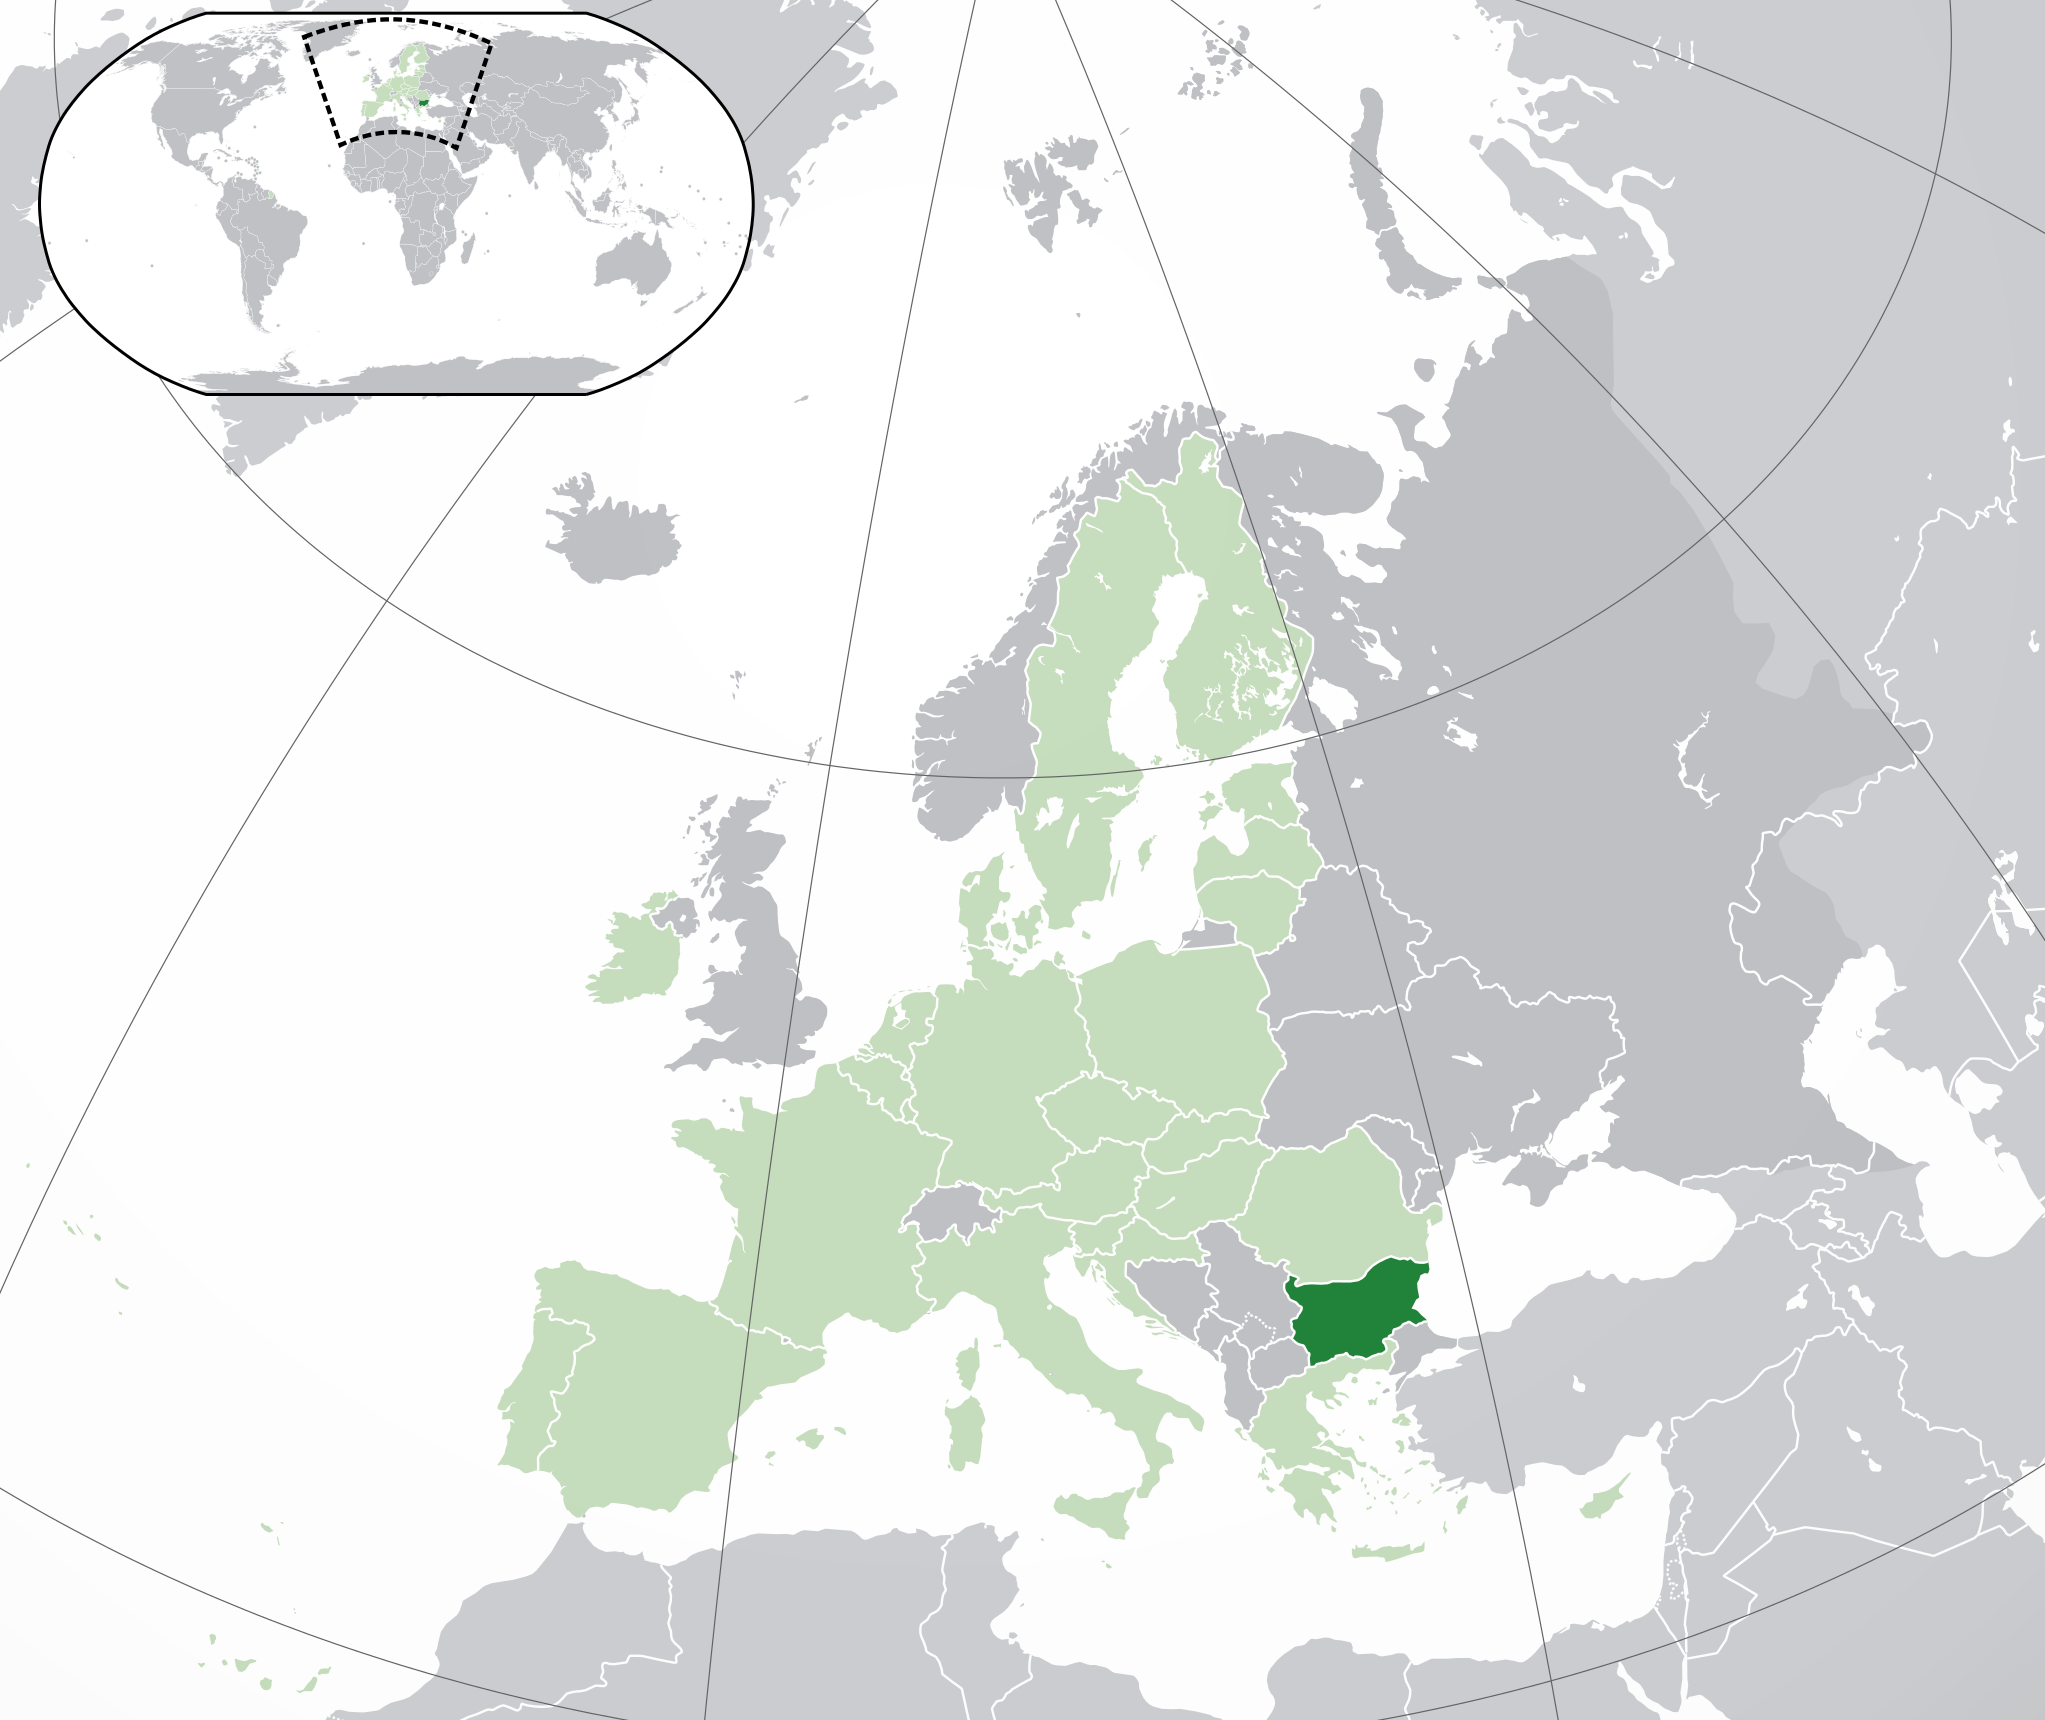 Bulgaria map.png